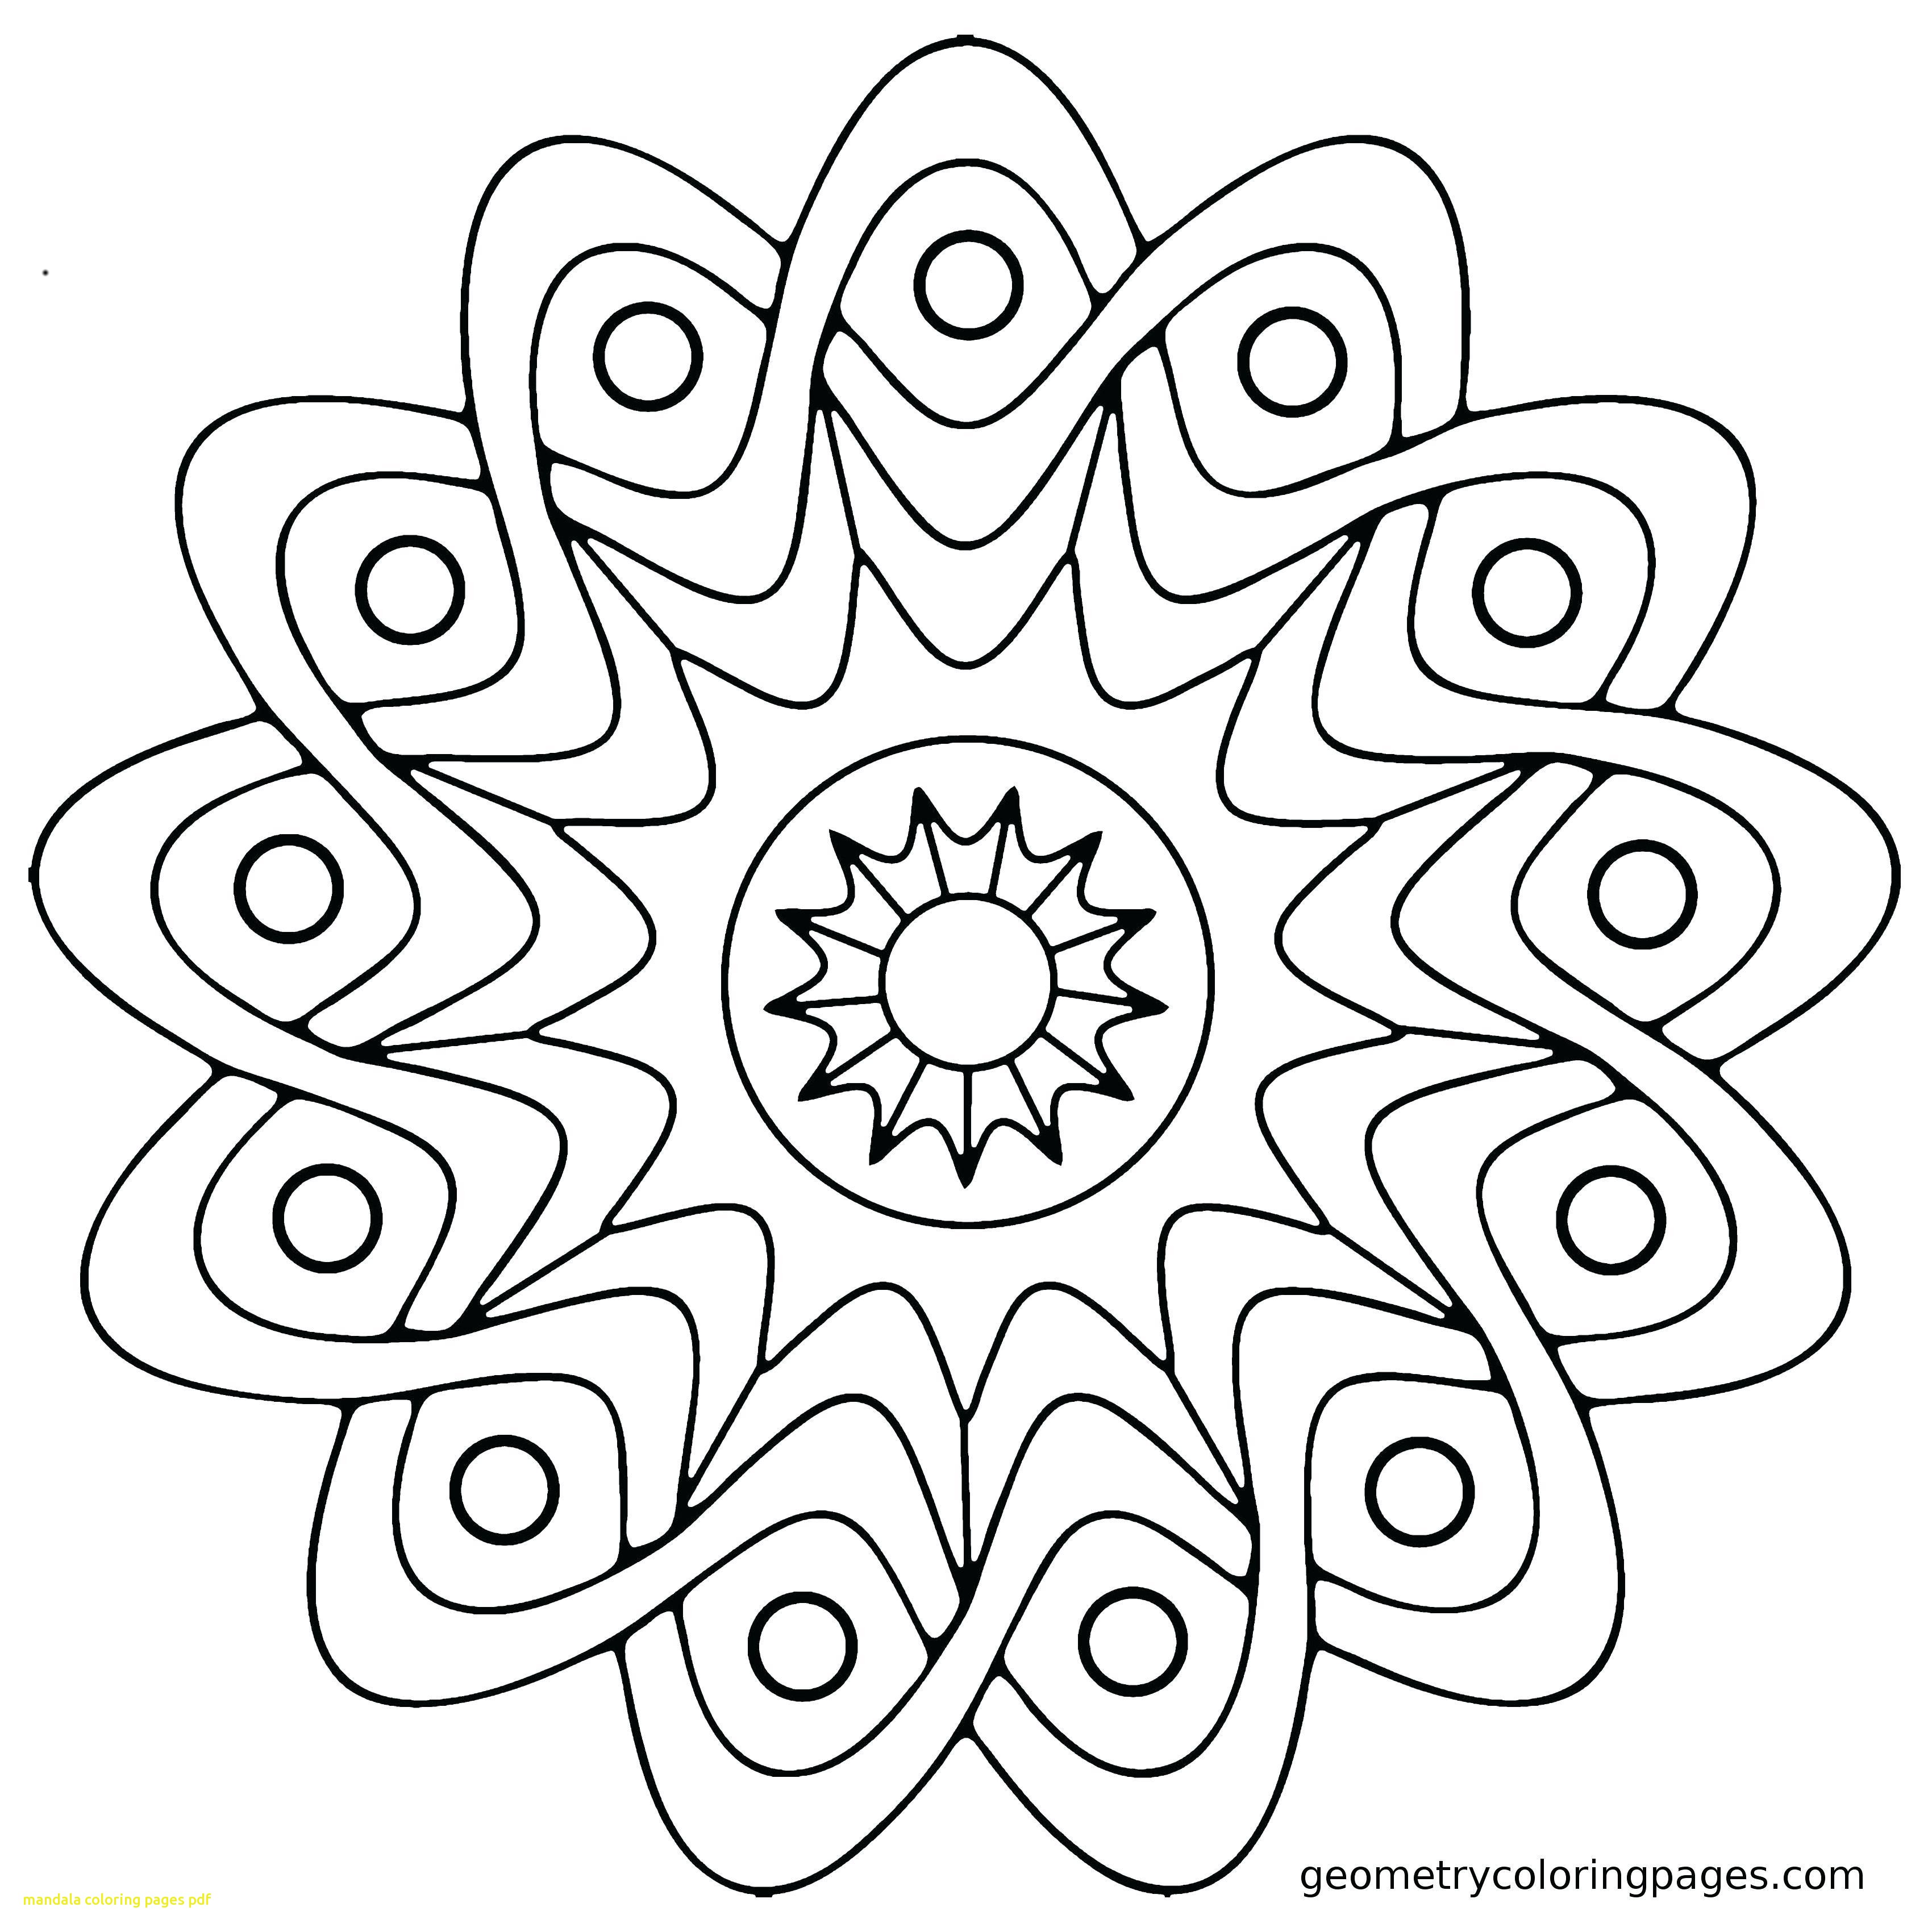 Mandala Coloring Pages Pdf at GetColorings.com | Free printable ...